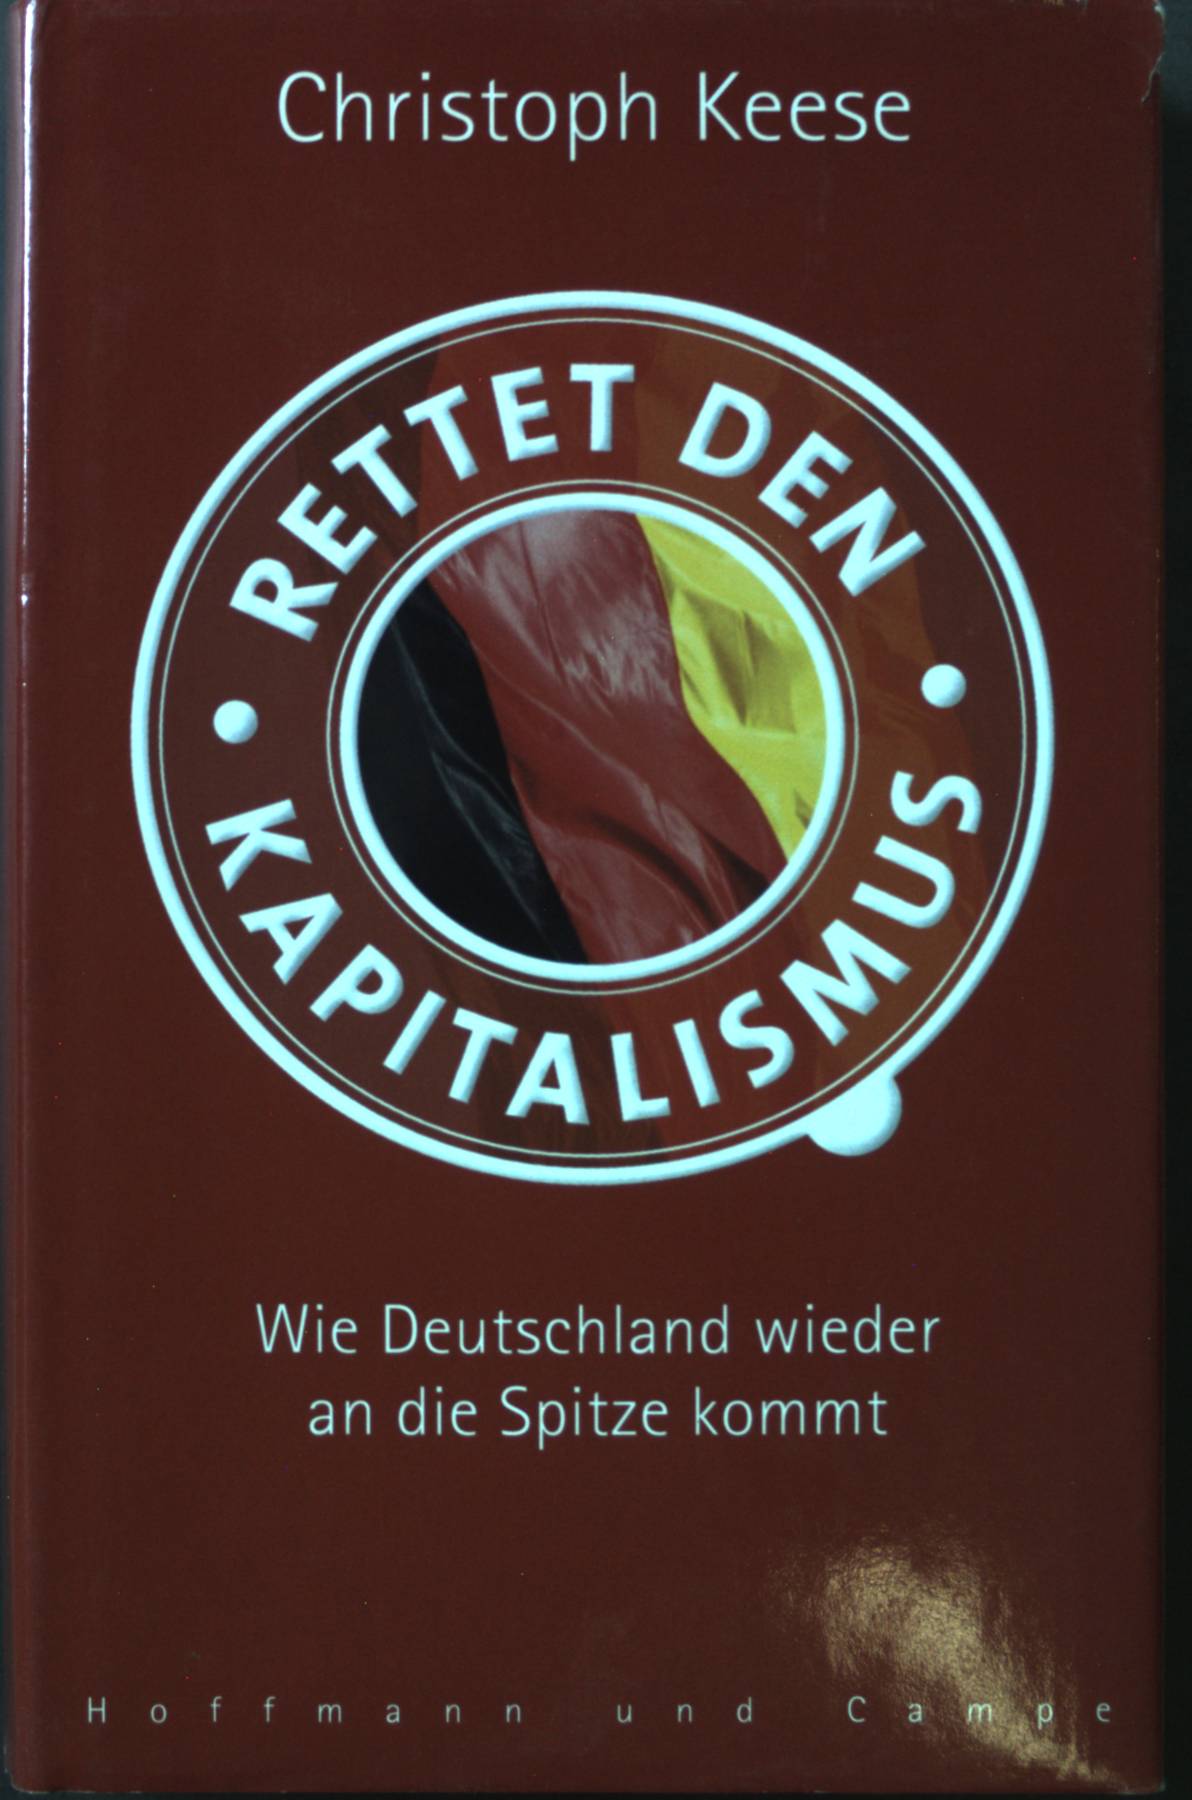 Rettet den Kapitalismus! : wie Deutschland wieder an die Spitze kommt. - Keese, Christoph